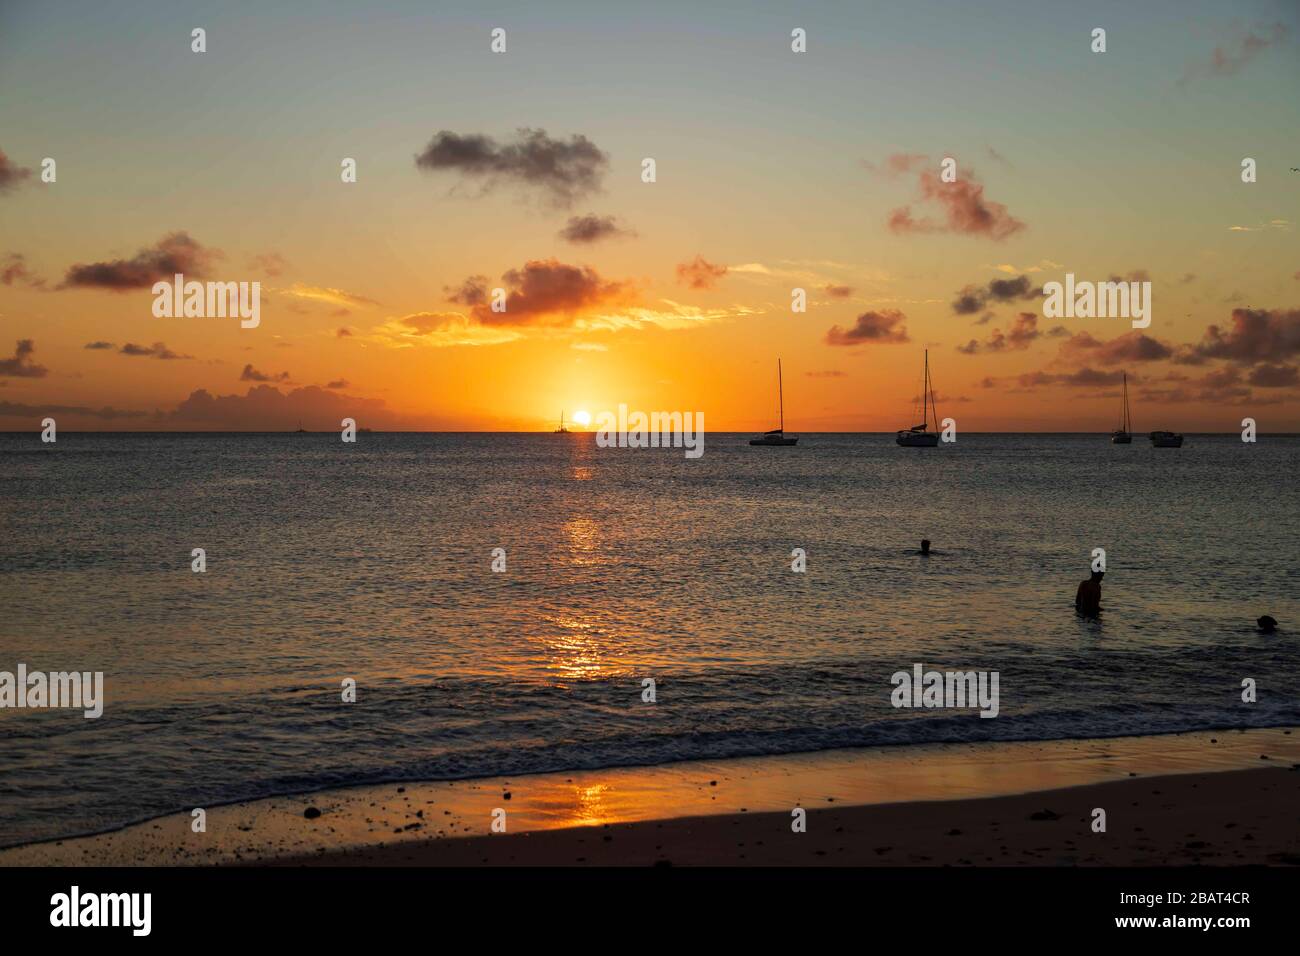 Hermosa puesta de sol naranja y amarilla, la línea del horizonte y el cielo pocas nubes, el sol reflejo en el mar y la costa, la gente en el mar con yates y barcos Foto de stock